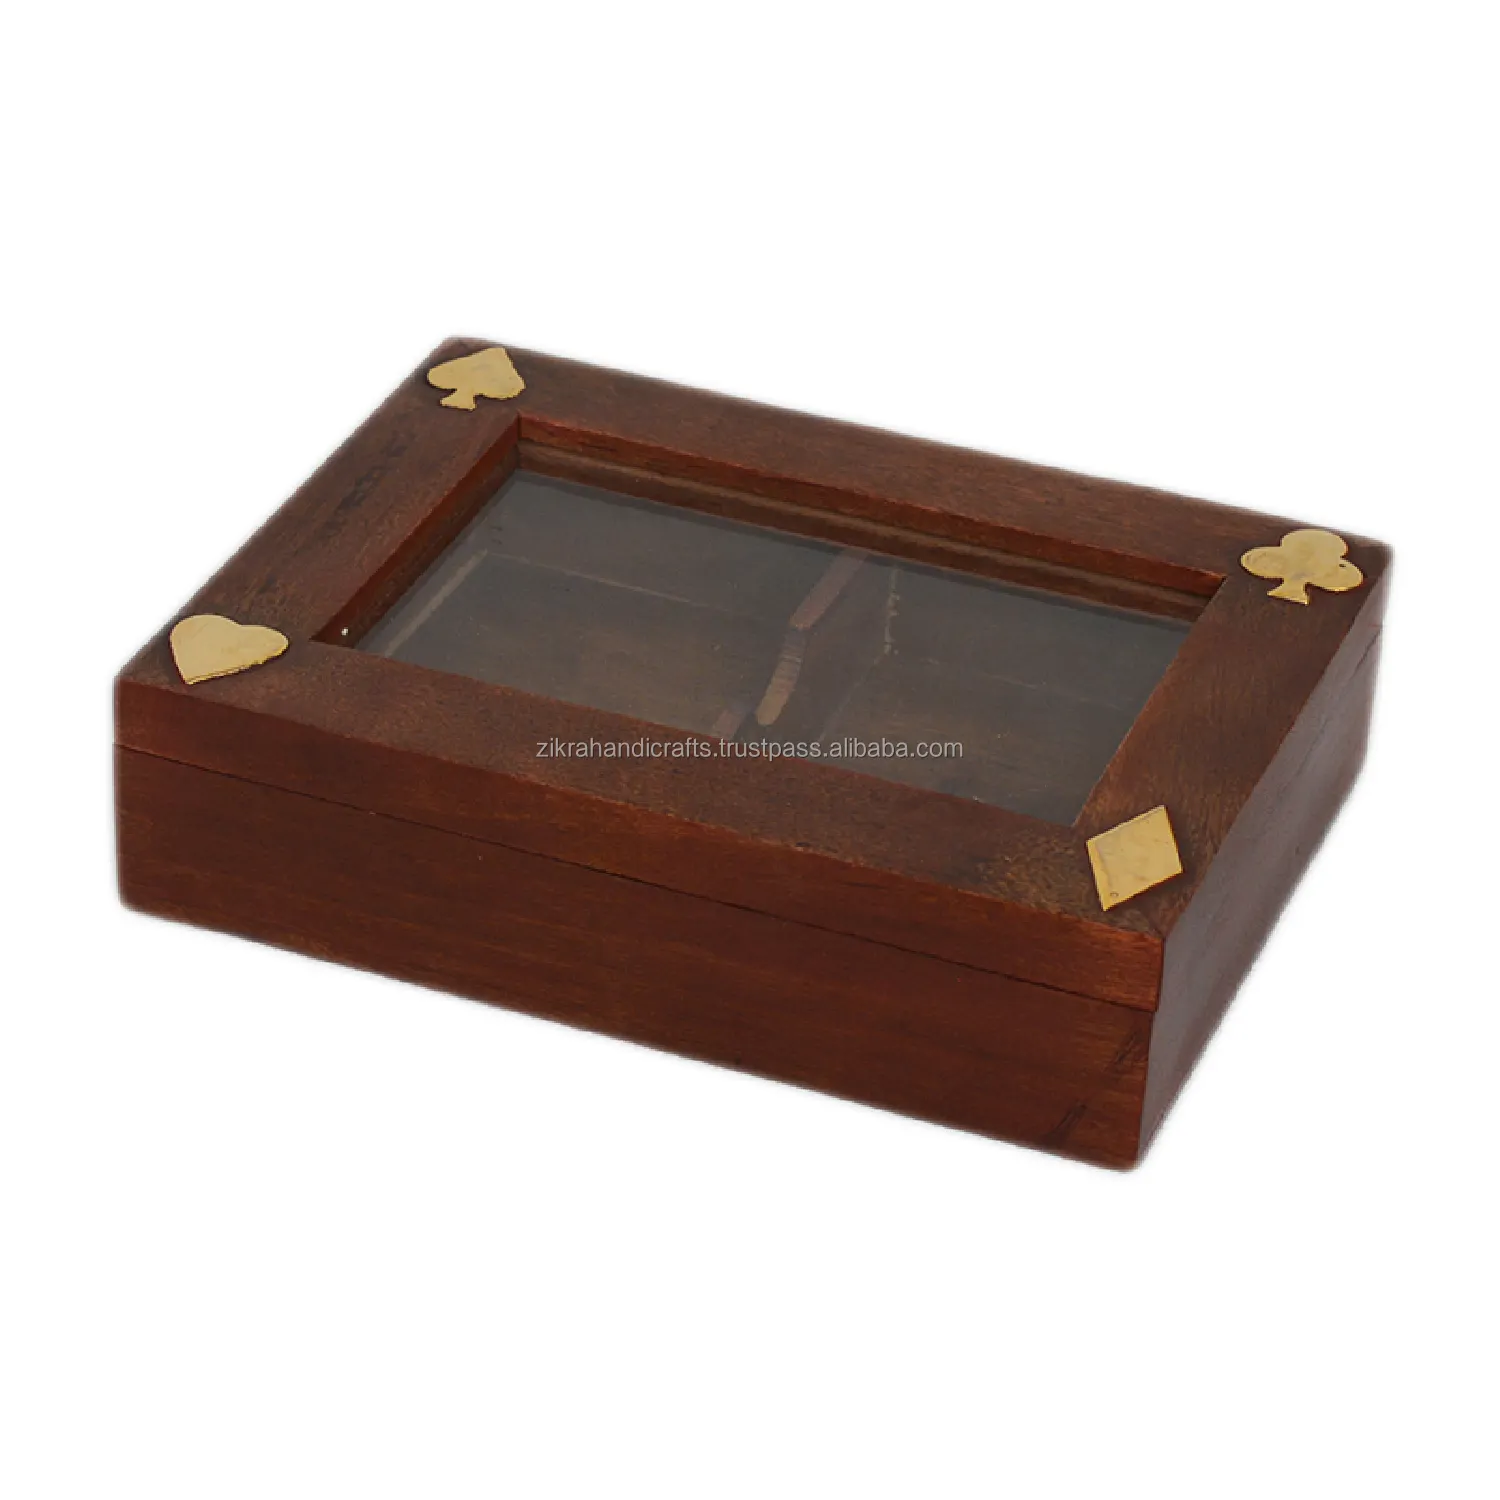 صندوق خشبي بأشكال فنية هندية, صندوق خشبي بتصميمات المطبخ لتخزين الطعام ، وهو من الأفضل مصقول لعلب حلوى الفواكه الجافة ، حاويات تخزين شوكولاتة